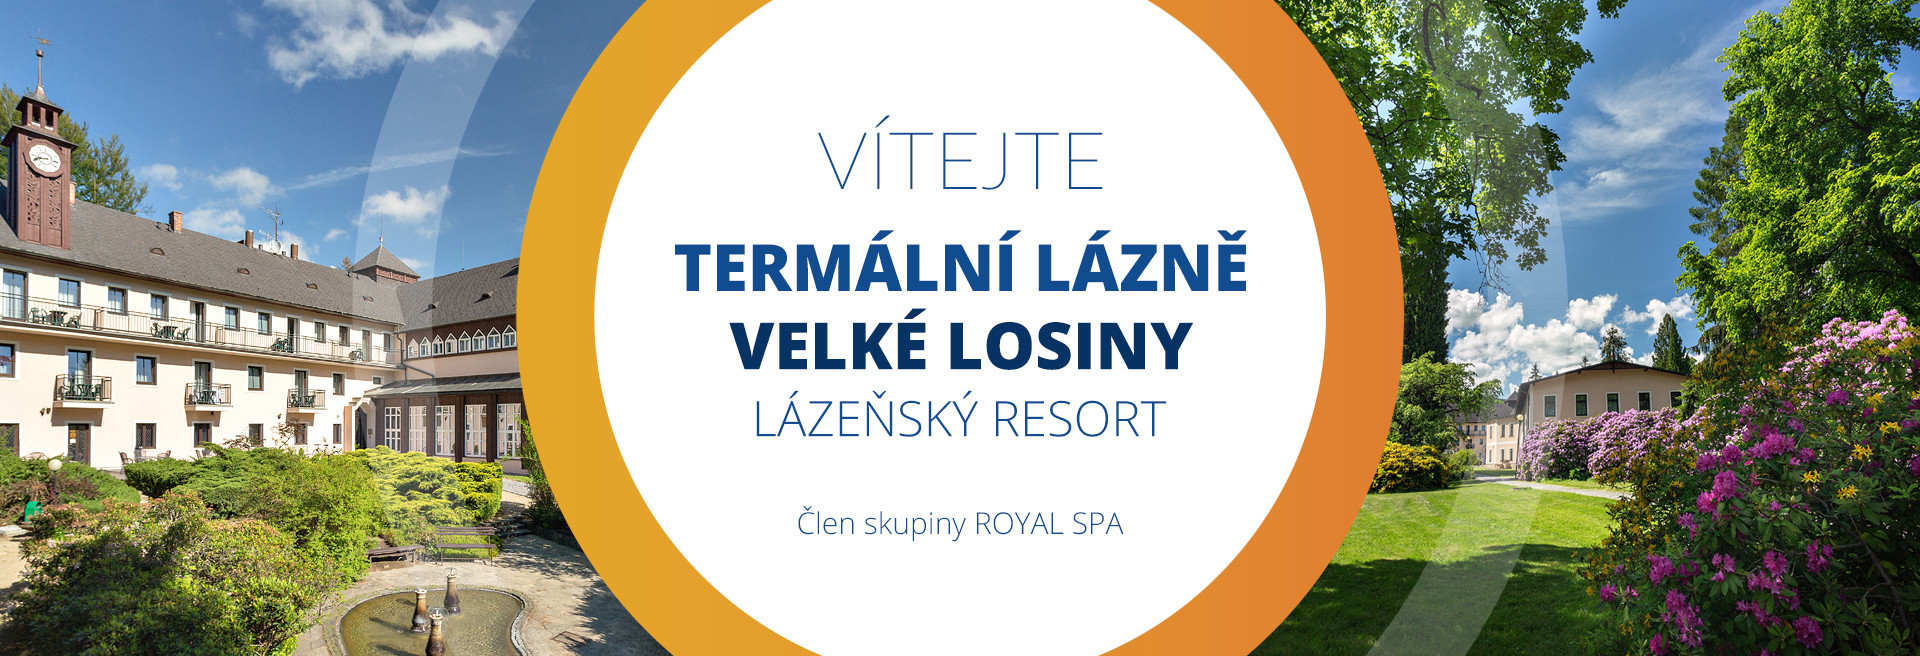 (c) Lazne-losiny.cz